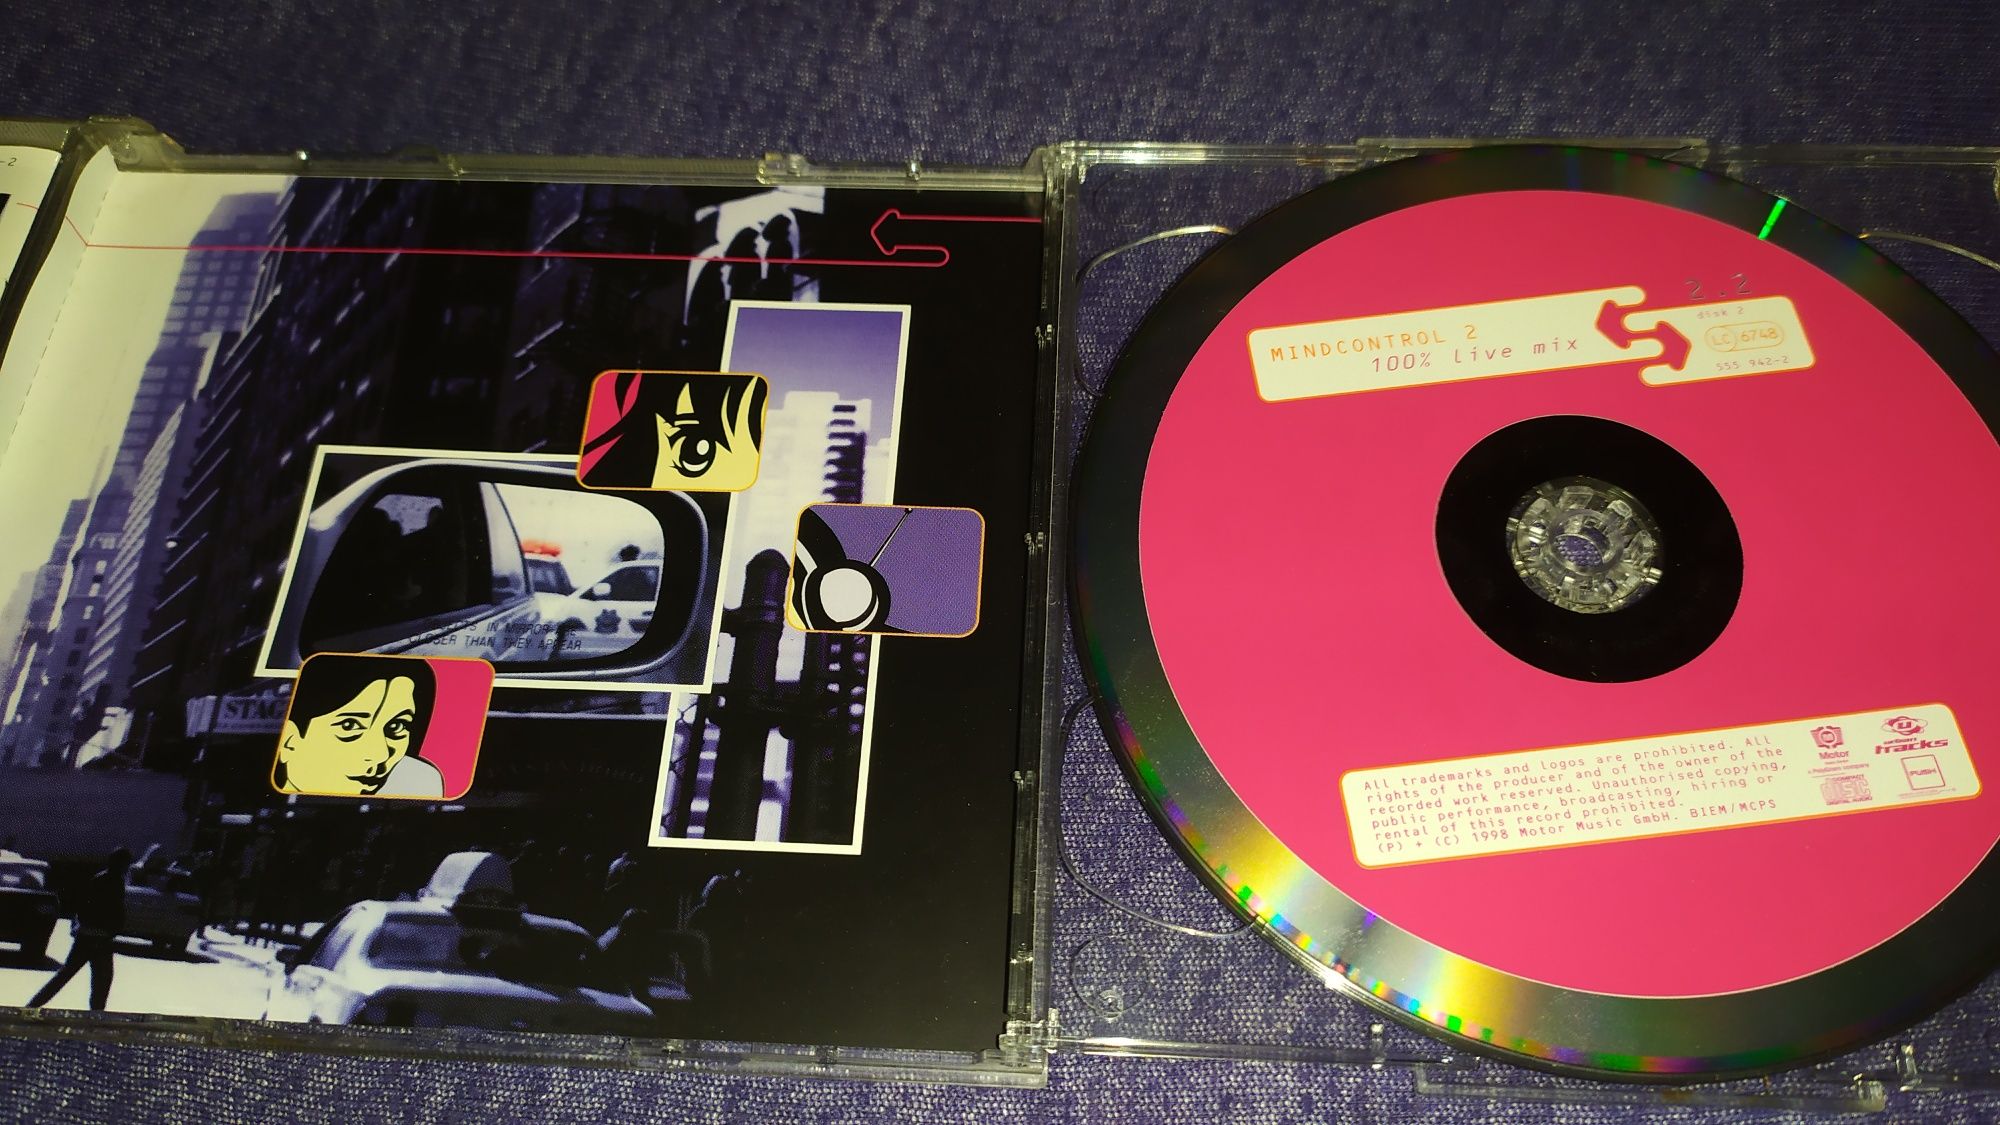 Mijk van Dijk Microglobe zestaw 3 cd techno